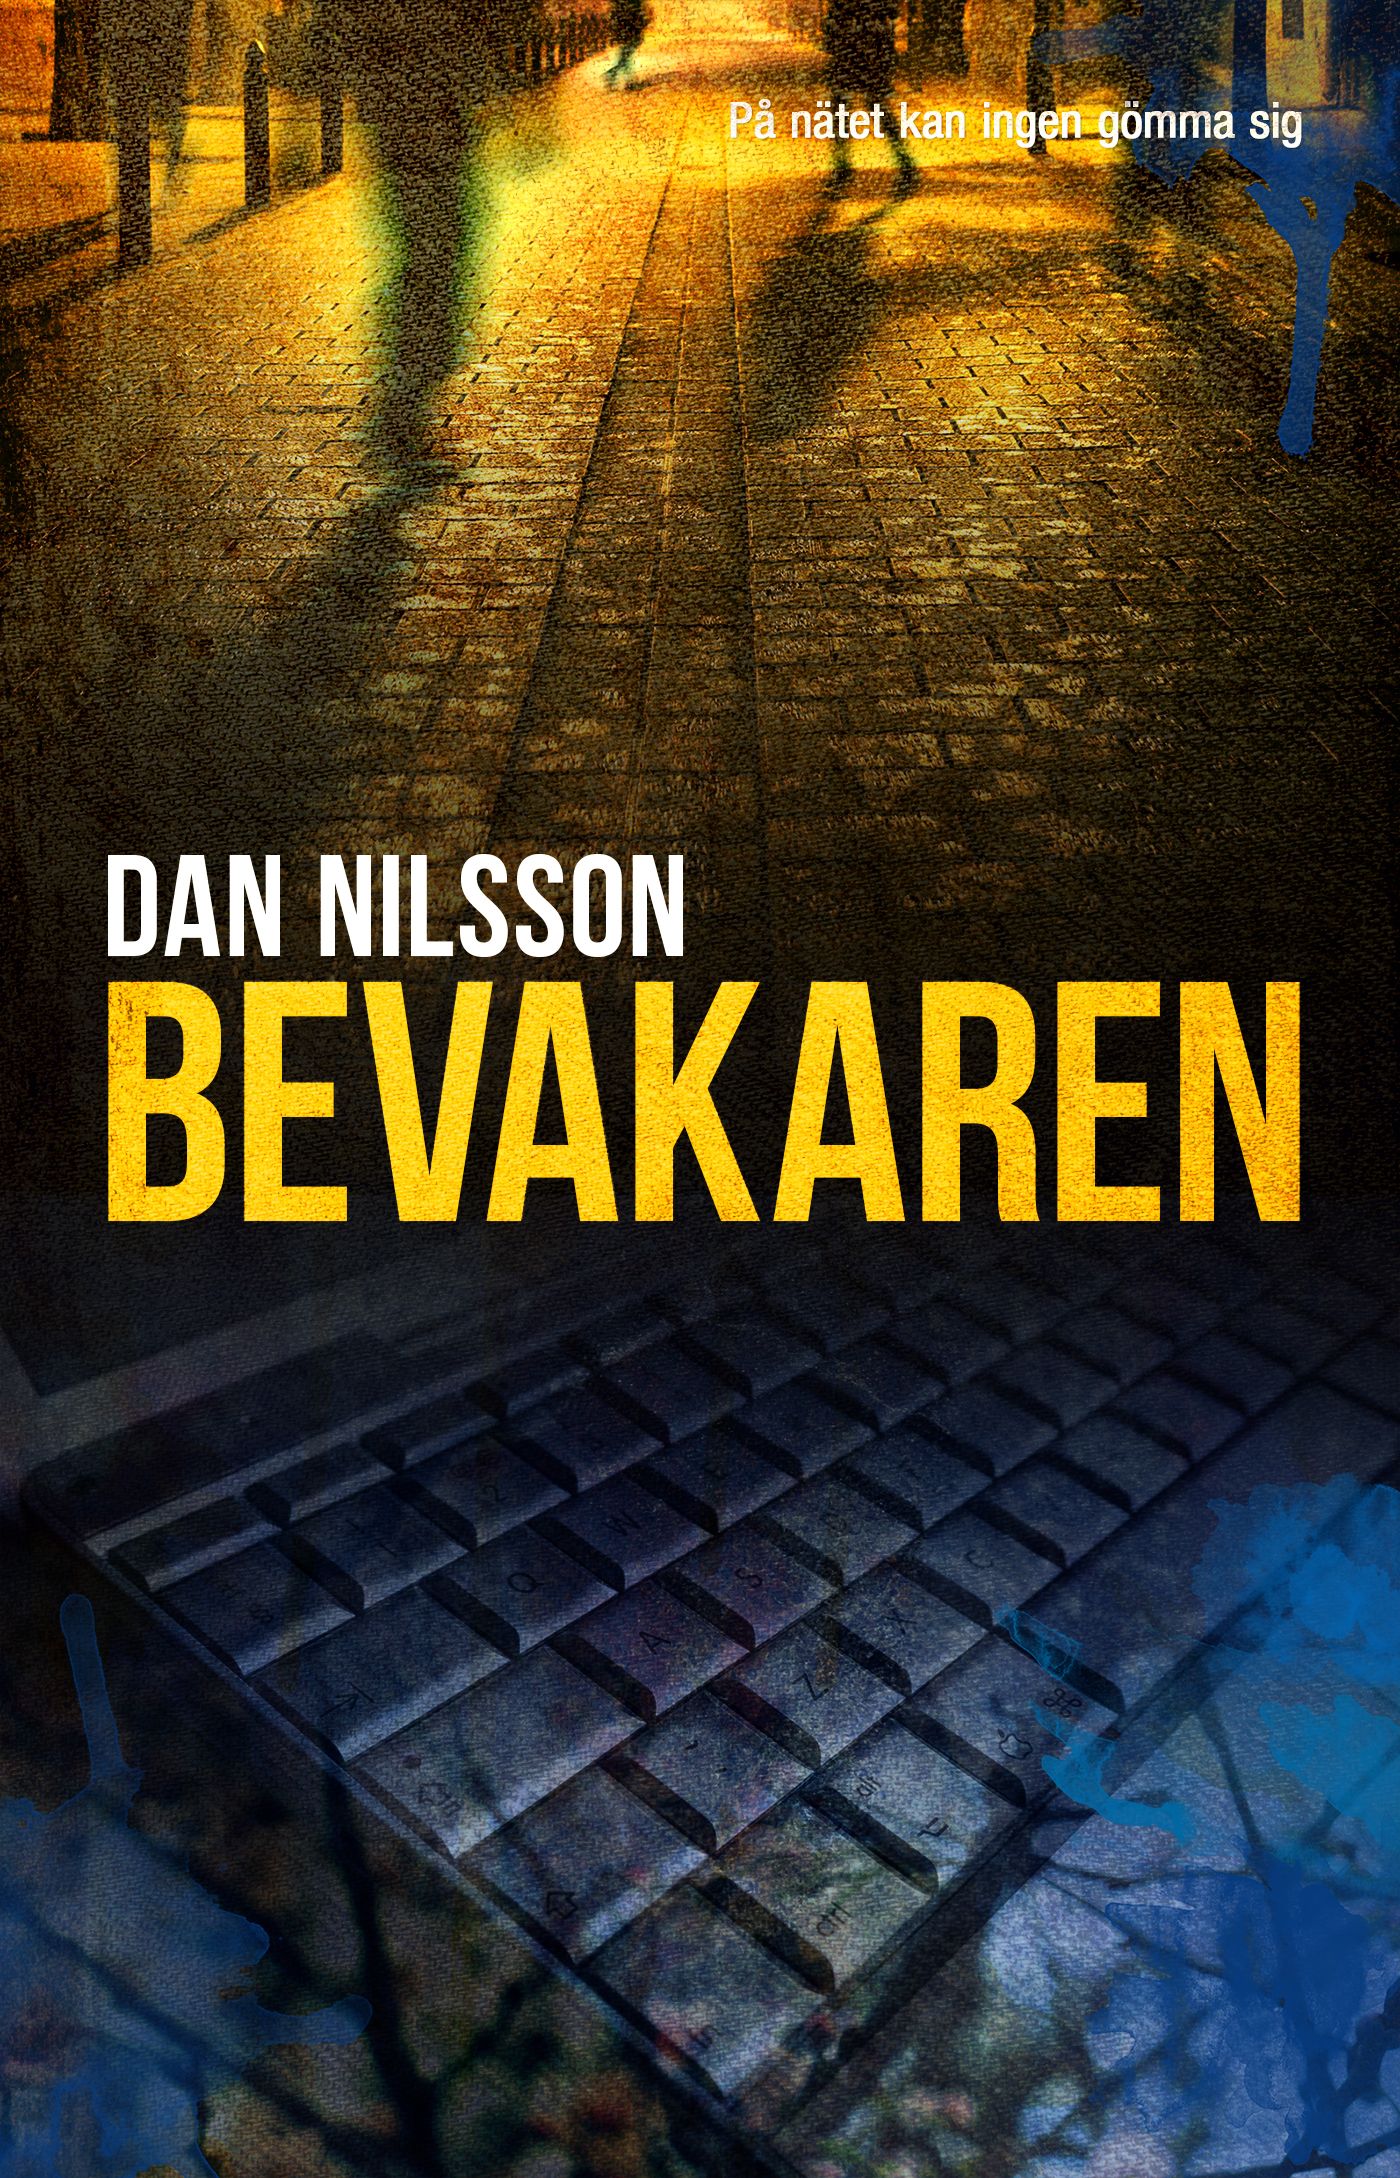 Bevakaren, e-bog af Dan Nilsson